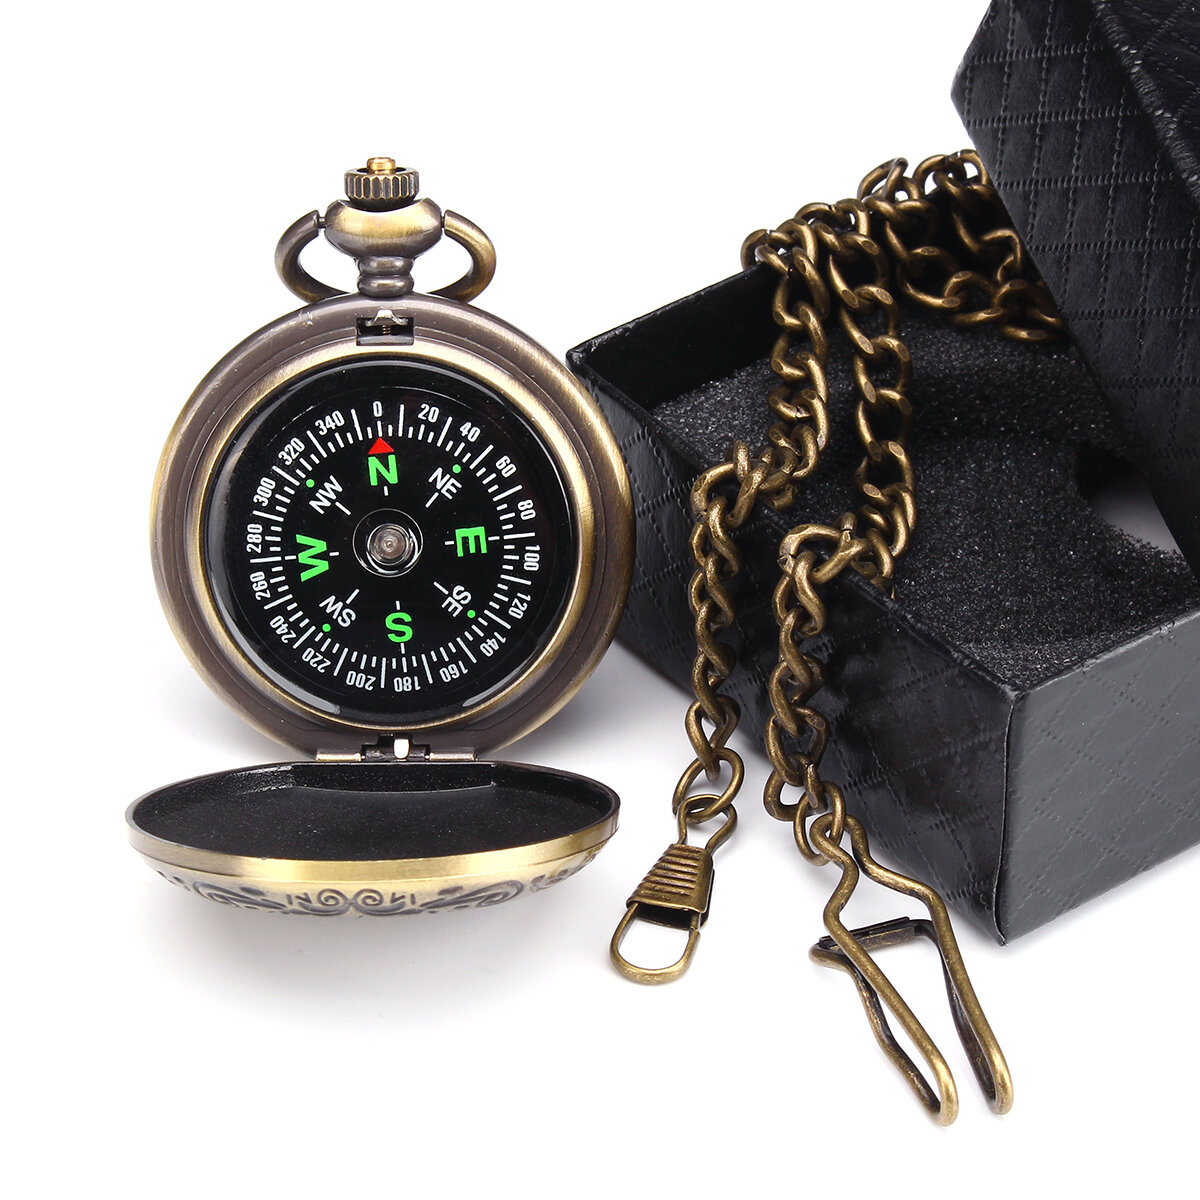 CHARMINER Taschenkompass mit Kette, tragbarer klassischer Messingkompass mit aufspringendem Deckel, wasserdichte Uhr, Flip-Open-Navigationswerkzeuge.